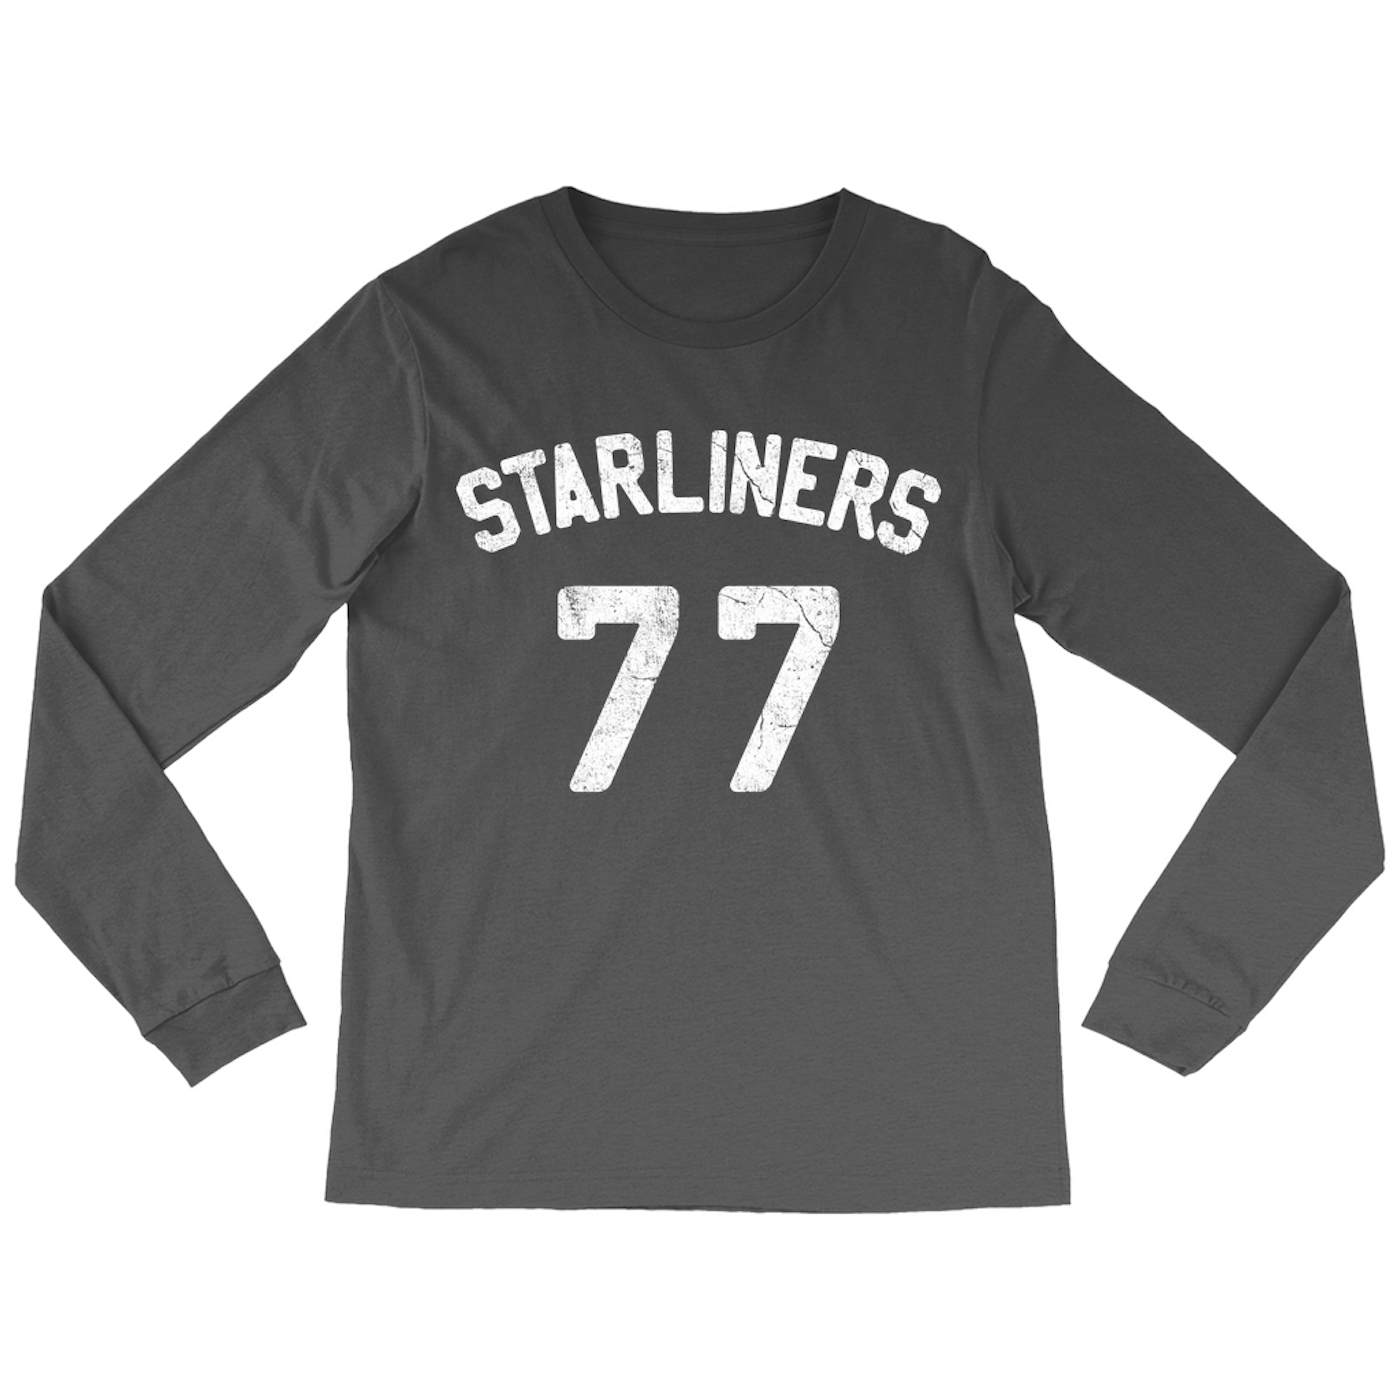 Blondie Long Sleeve Shirt | Starliners 77 Worn By Debbie Harry Blondie Shirt